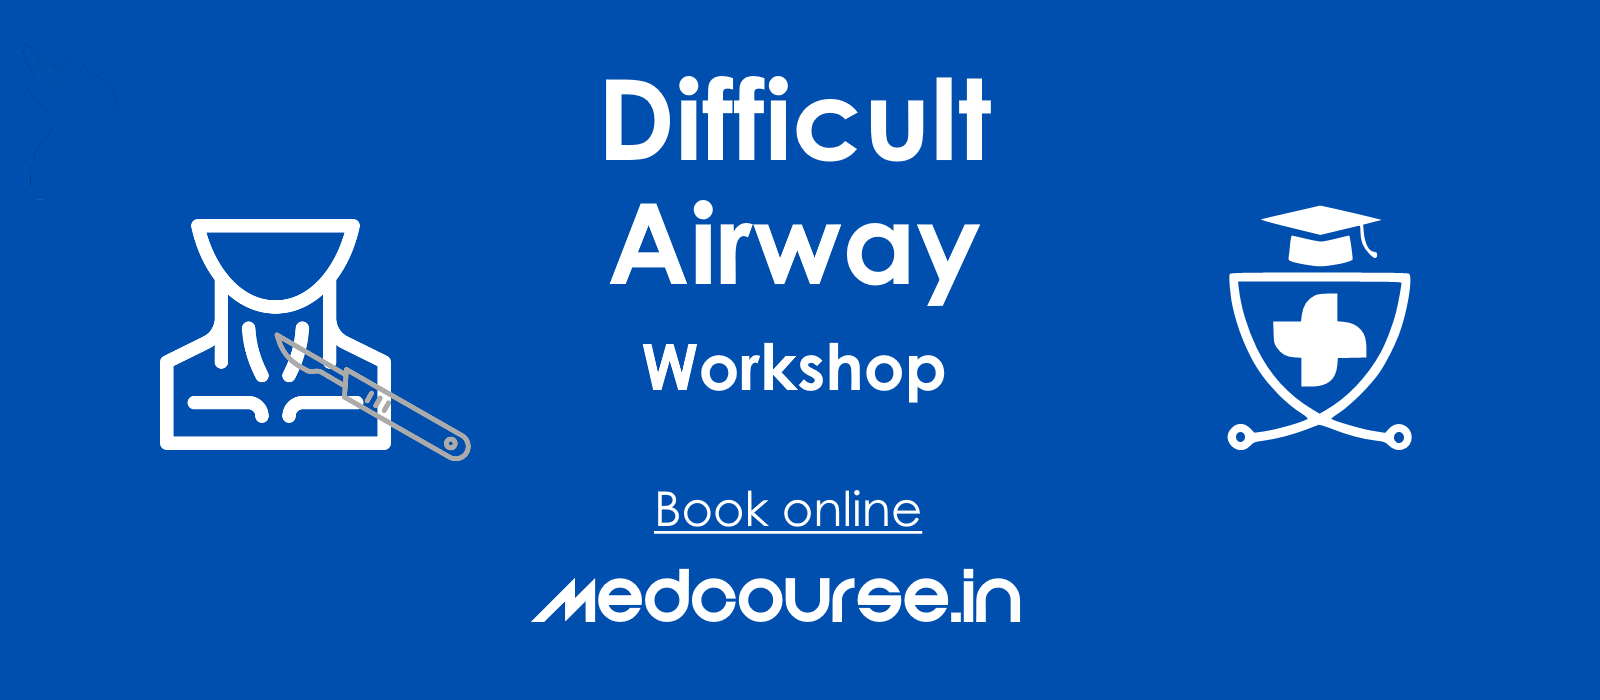 Difficult airway workshop